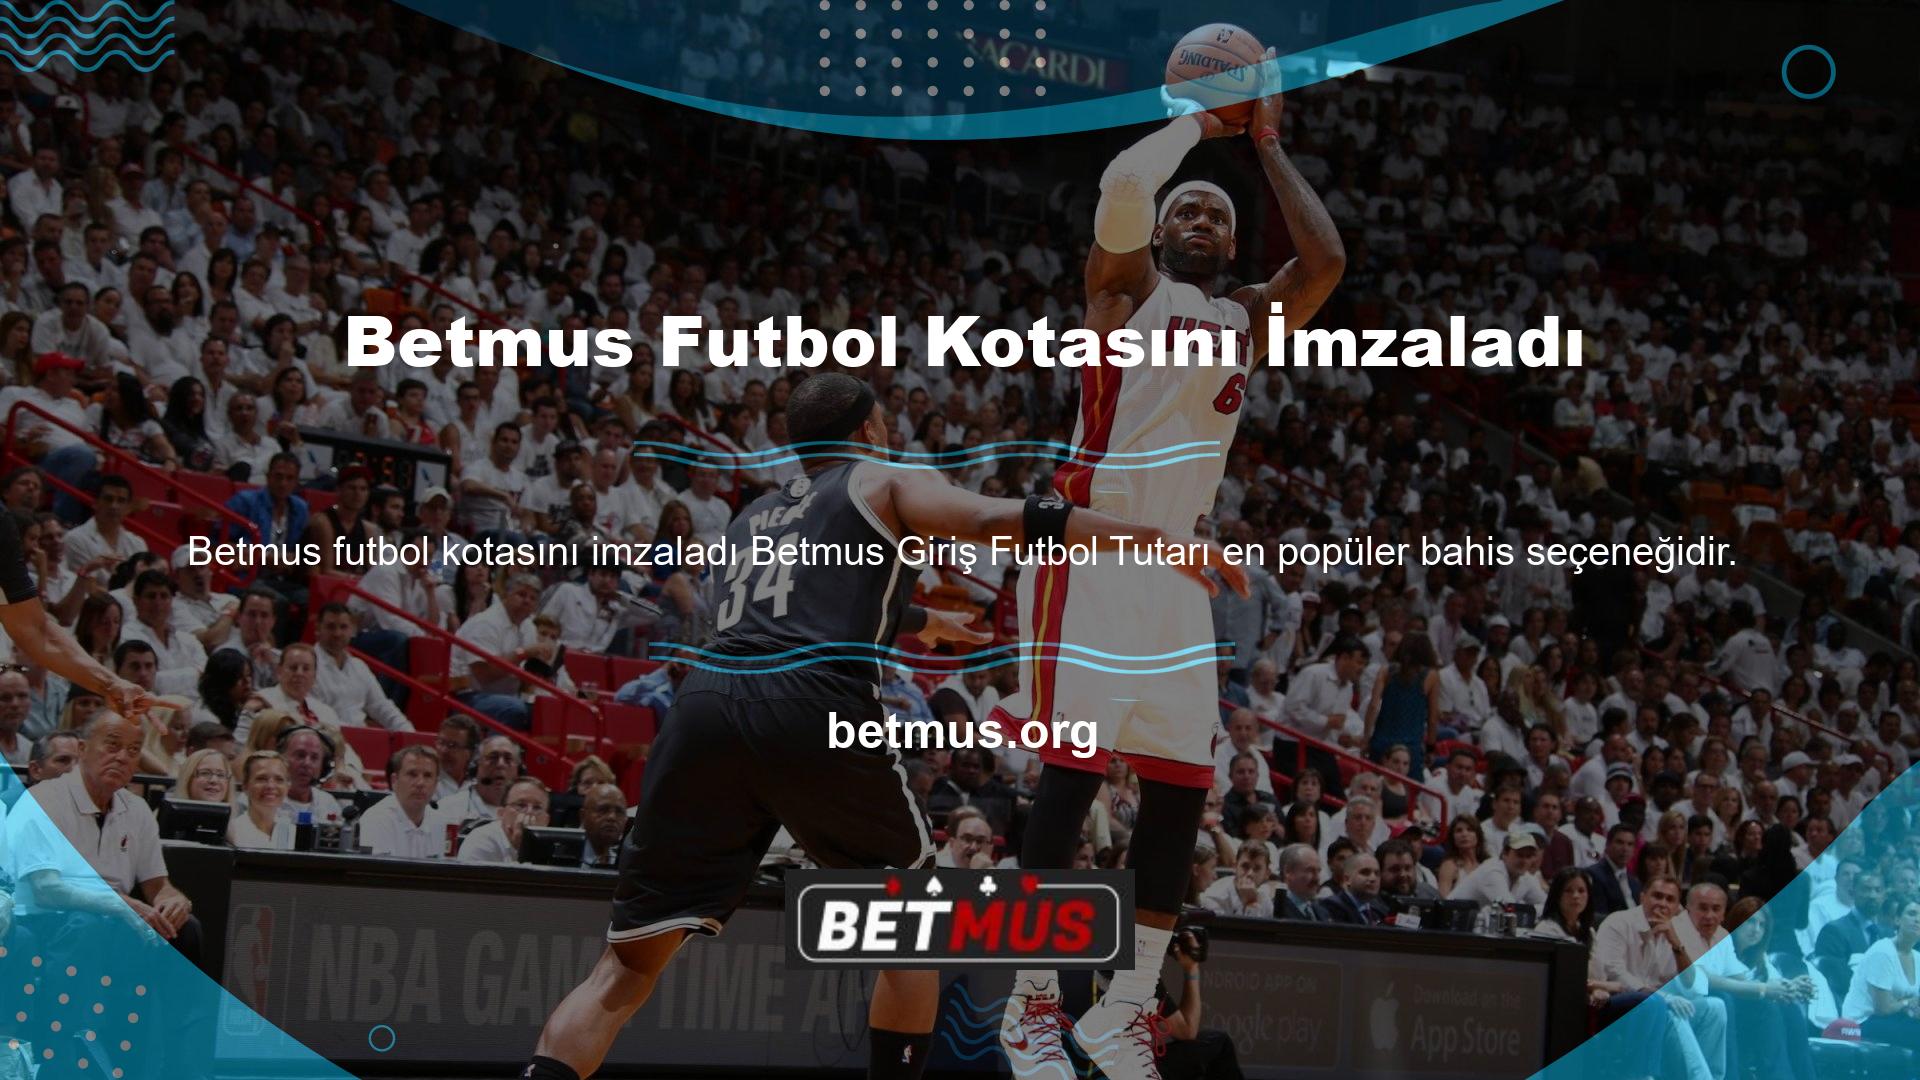 Futbol dünyada ve Türkiye'de en popüler spor olduğu için nicelik de önemlidir